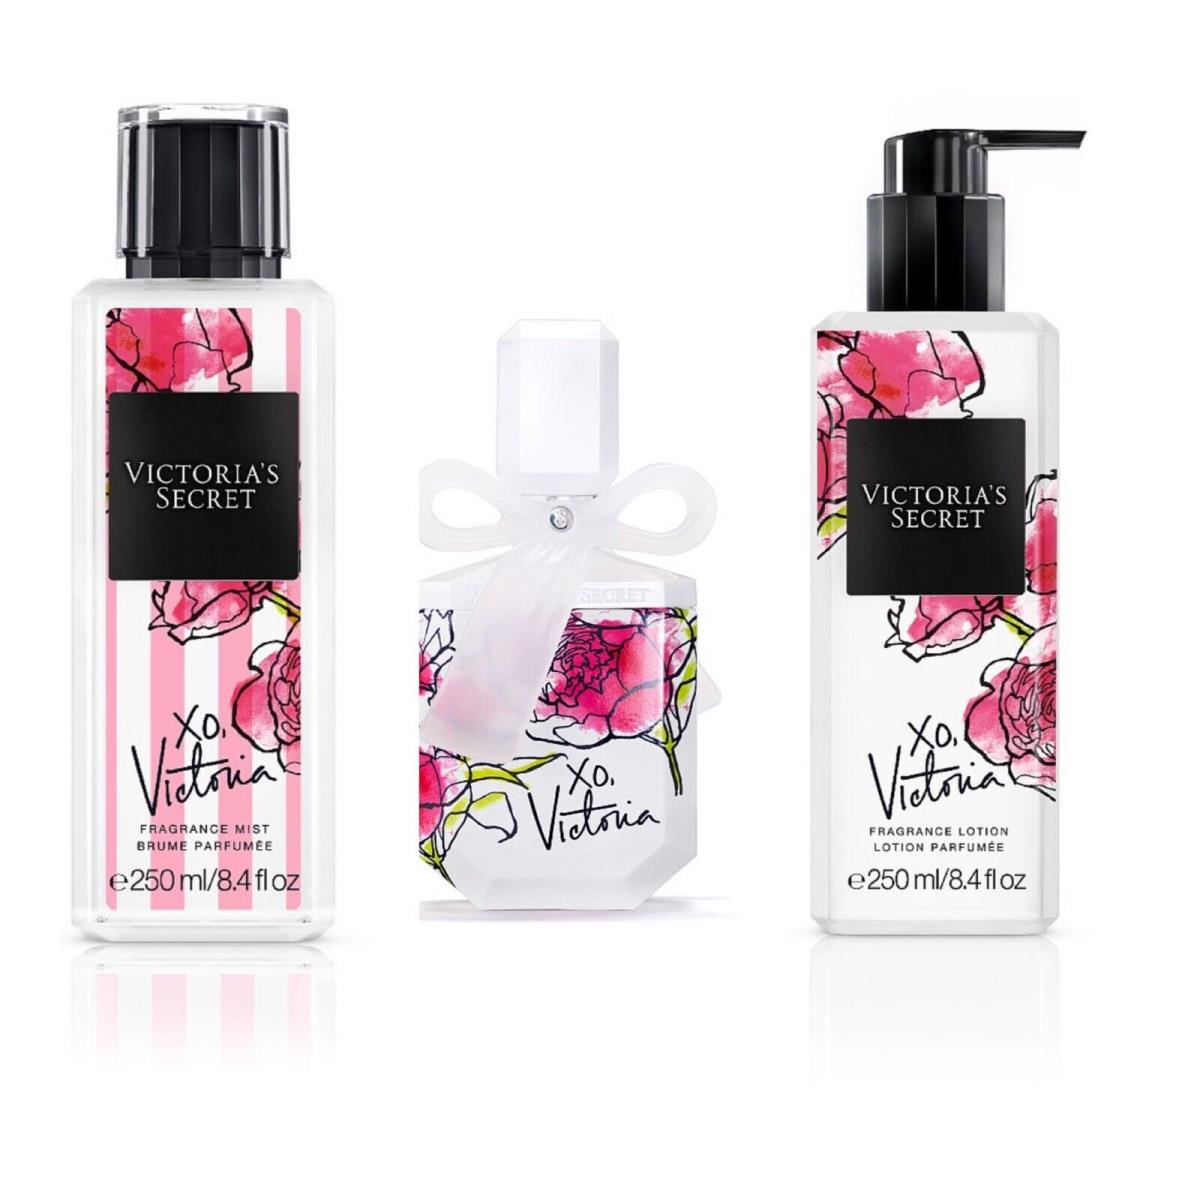 Victoria`s Secret XO Victoria Eau de Parfum 3.4 Fl.oz. /fragrance Mist /lotion